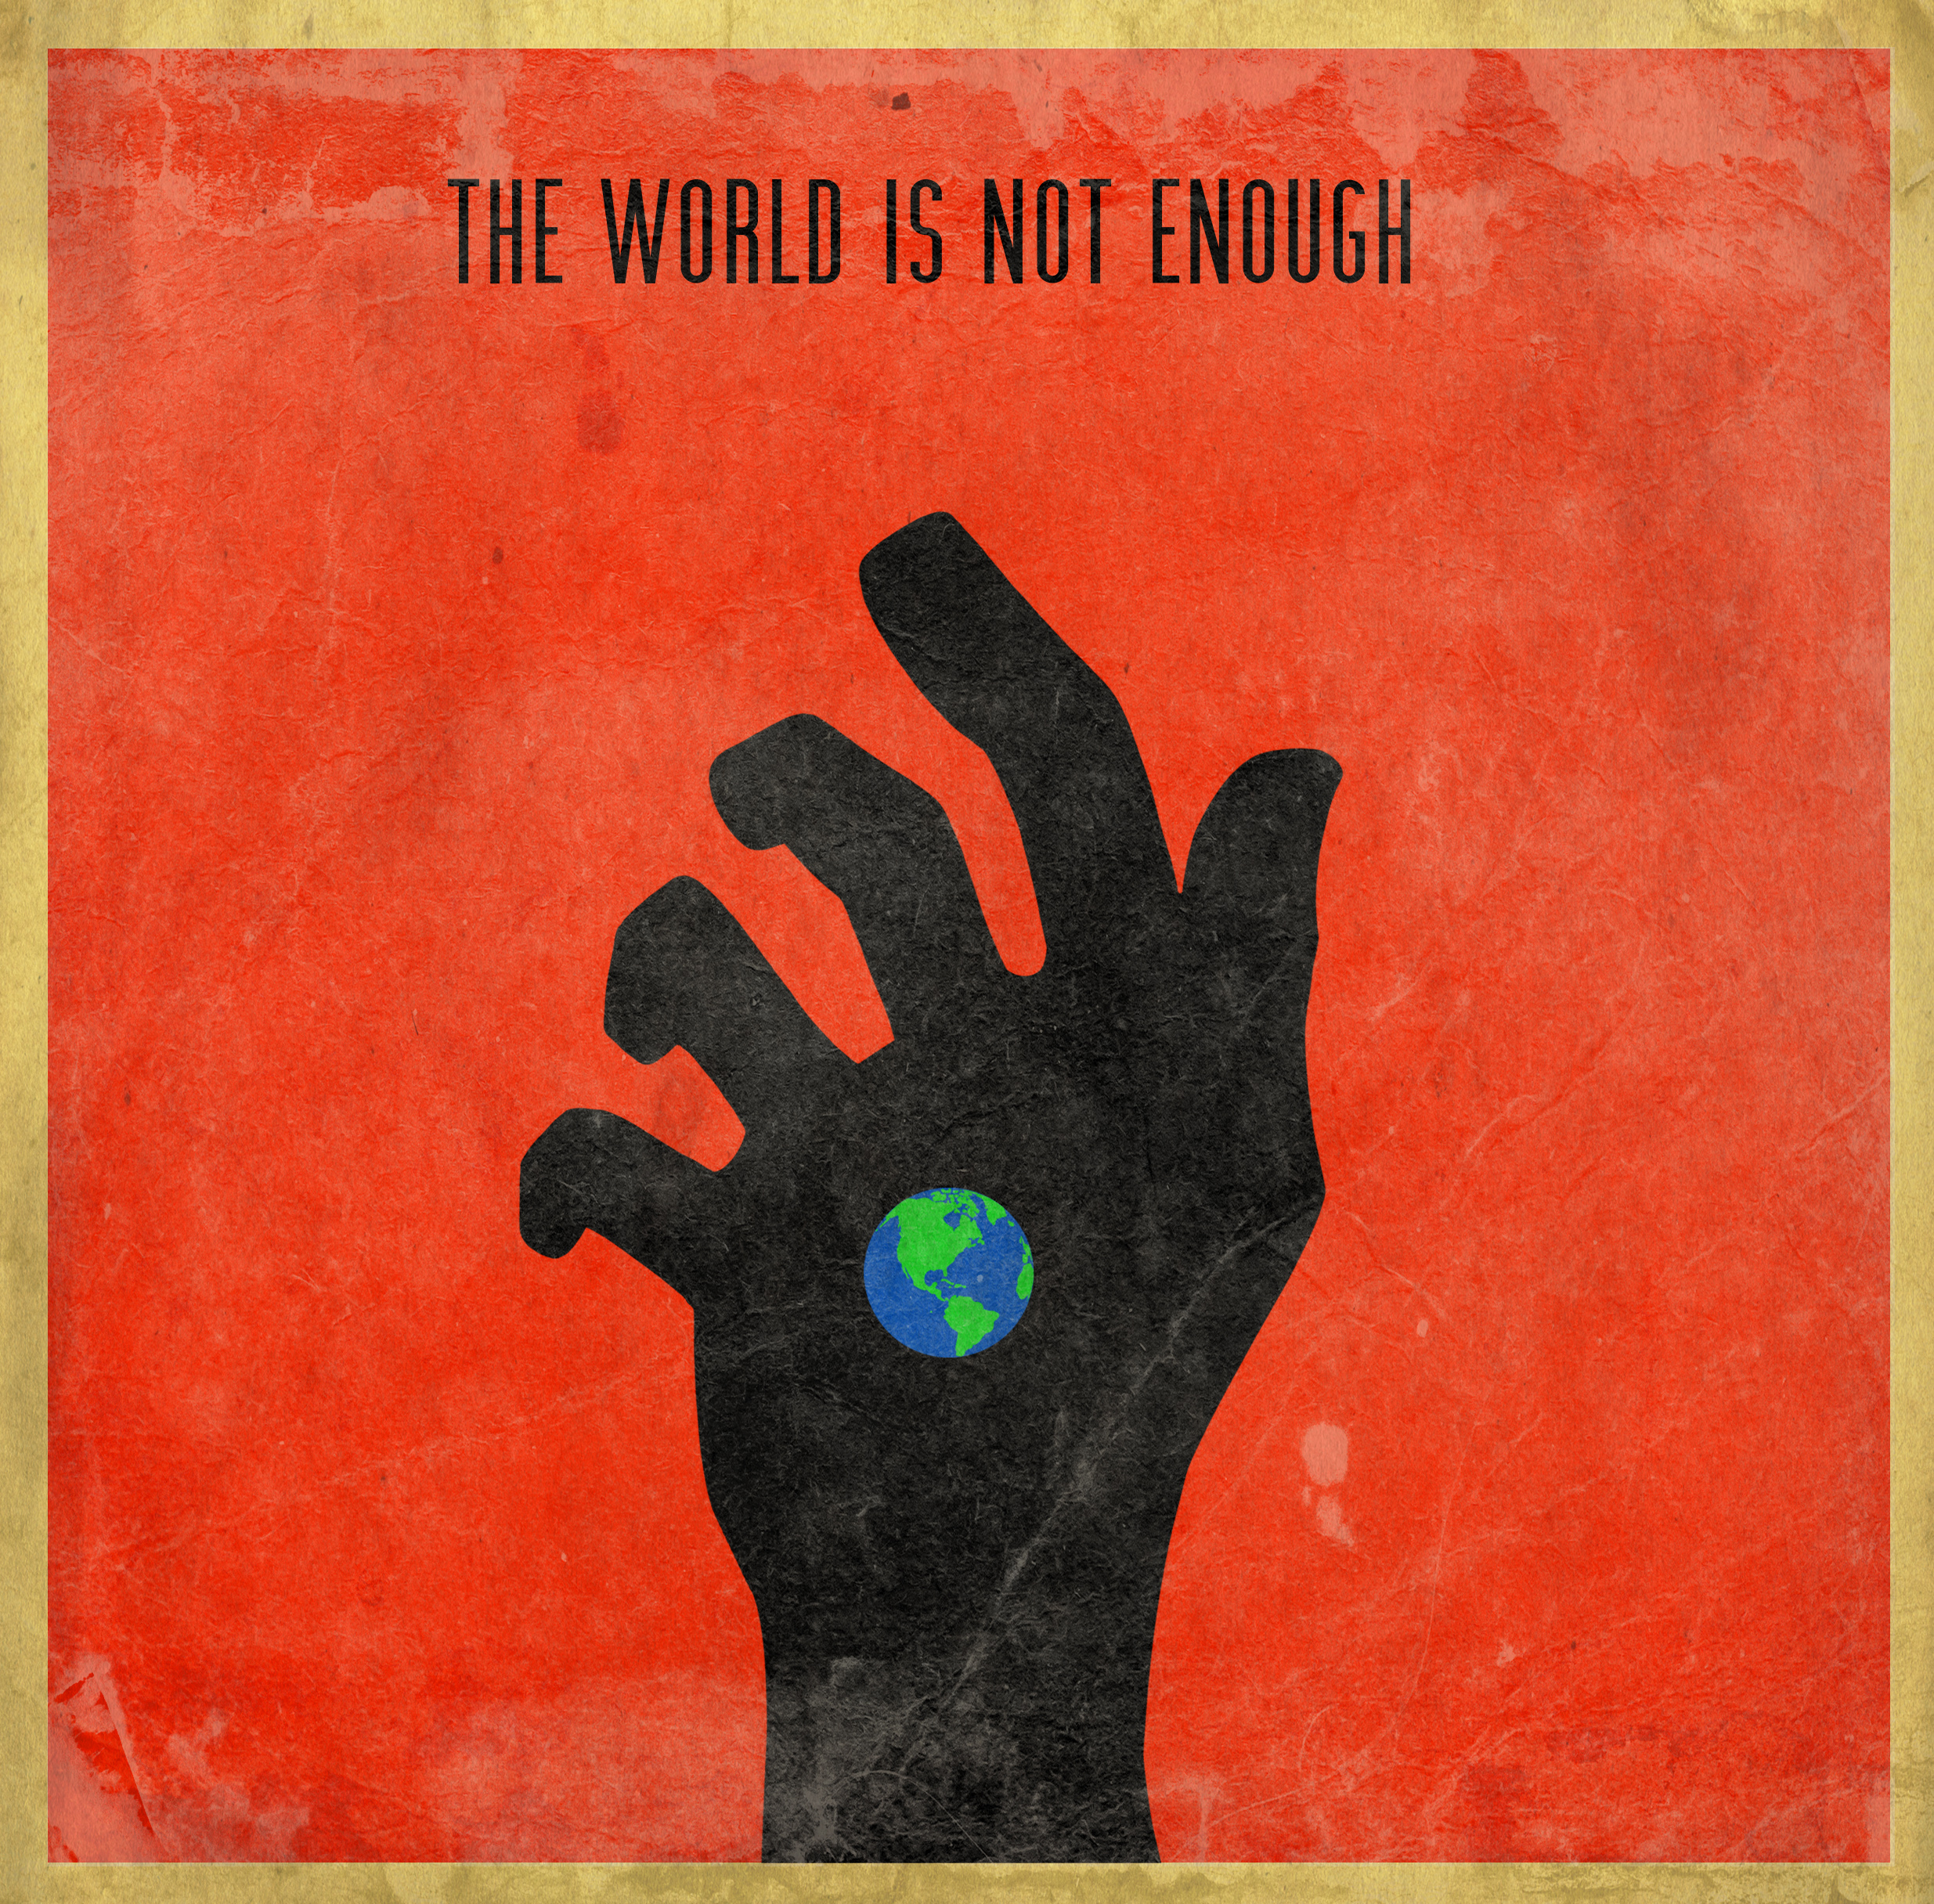 Garbage the world is. Garbage the World is not enough. Not enough. 007 The World is not enough Garbage. Enough not enough.